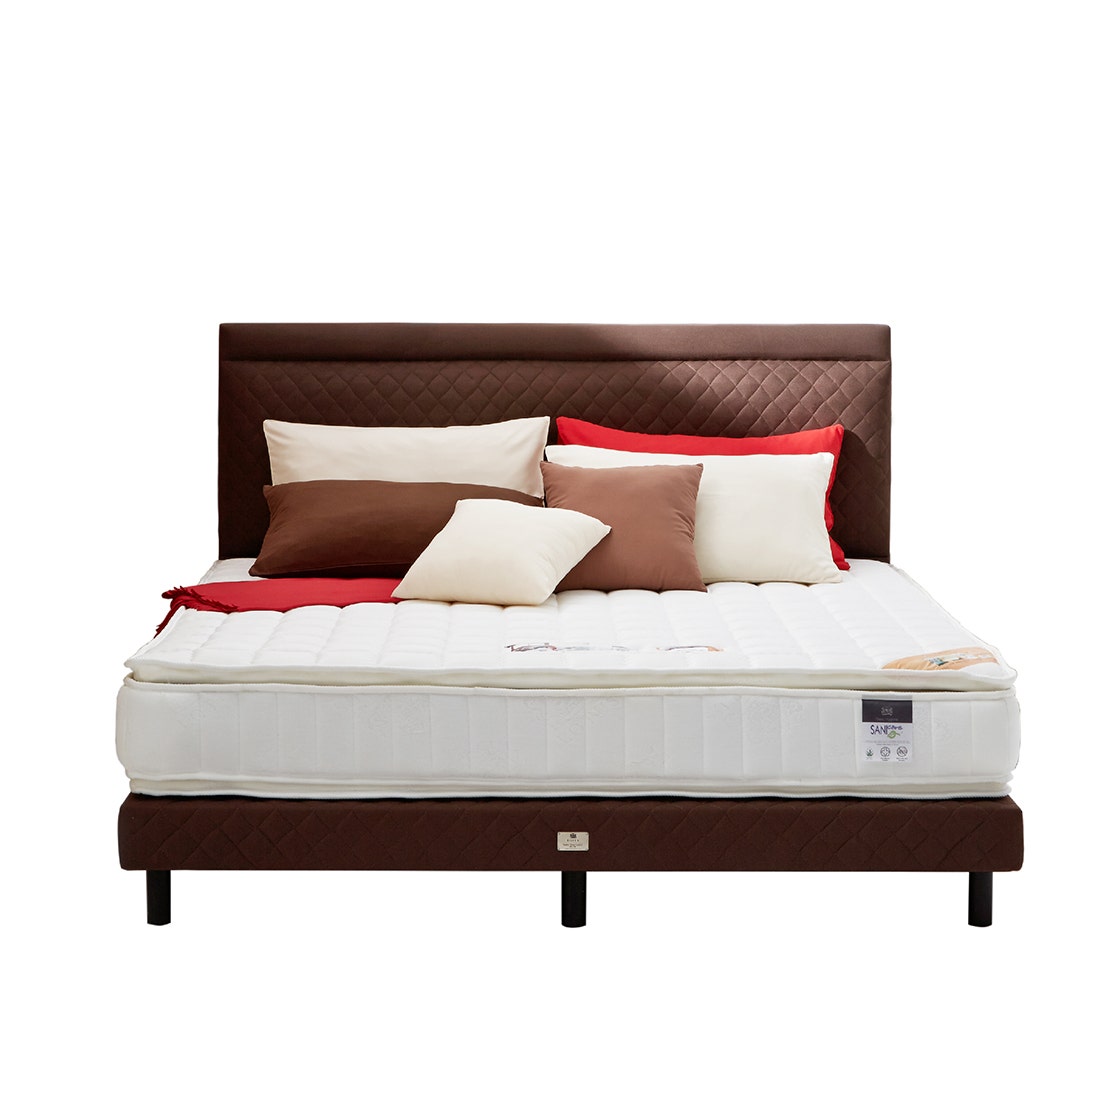 39005125-mattress-bedding-mattresses-spring-mattresses-01